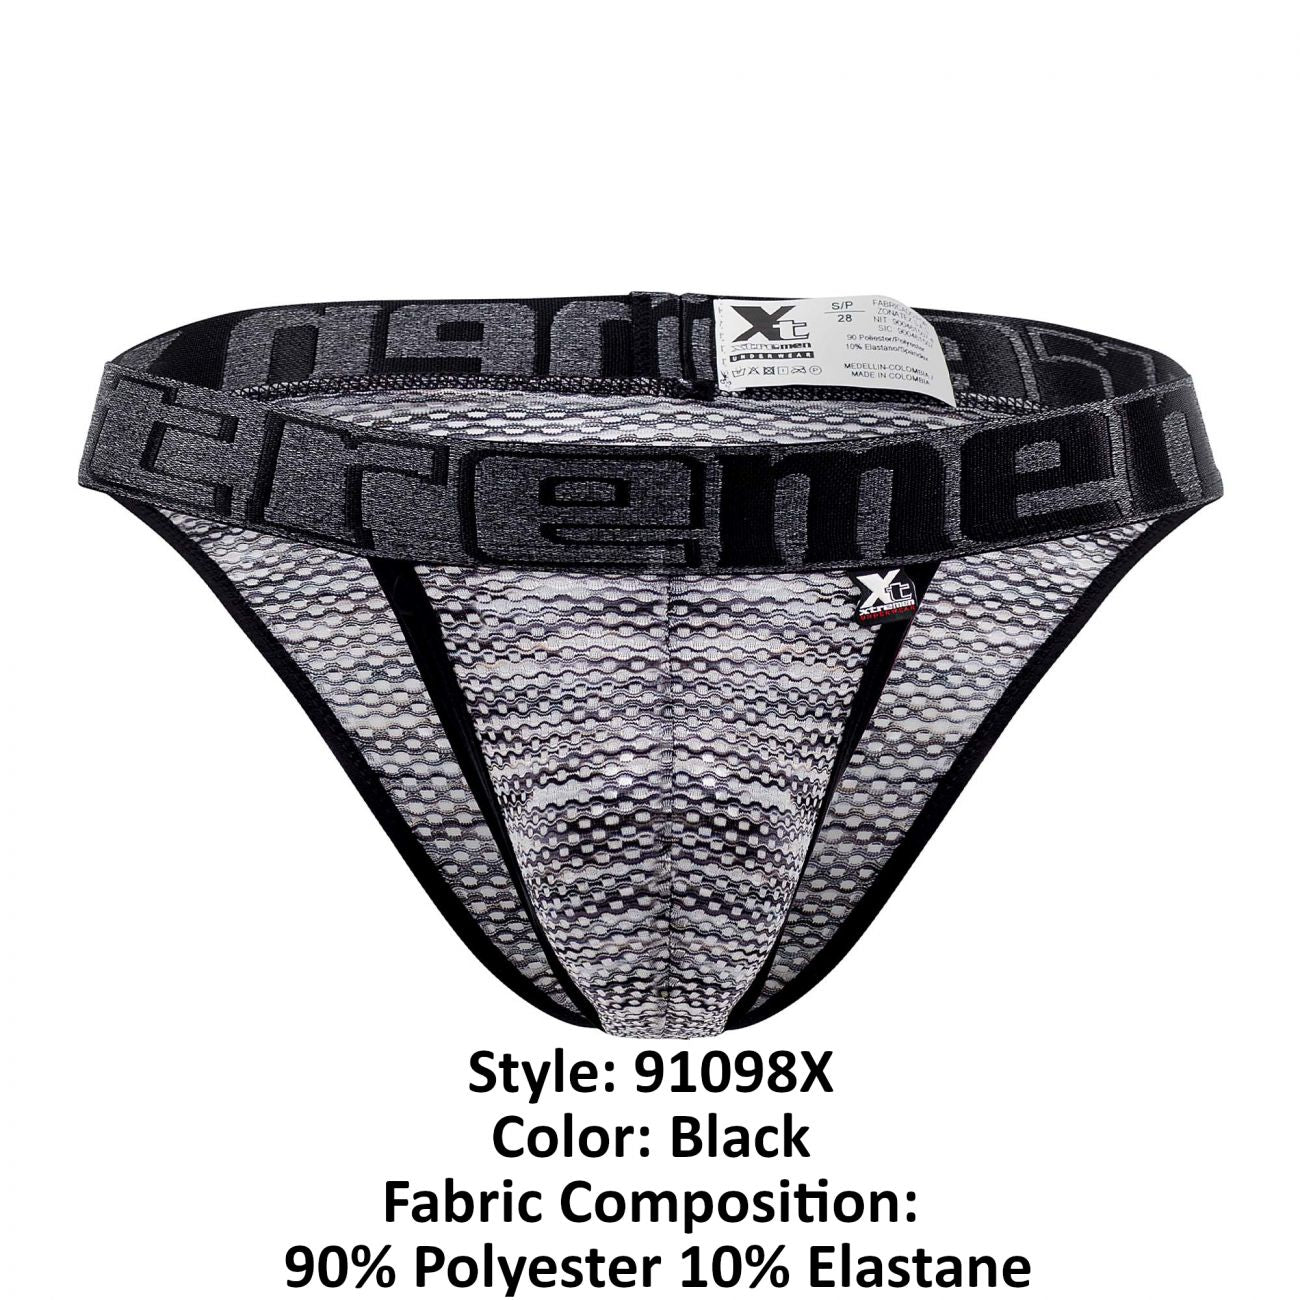 Xtremen 91098X Microfiber Mesh Bikini Black Plus Sizes